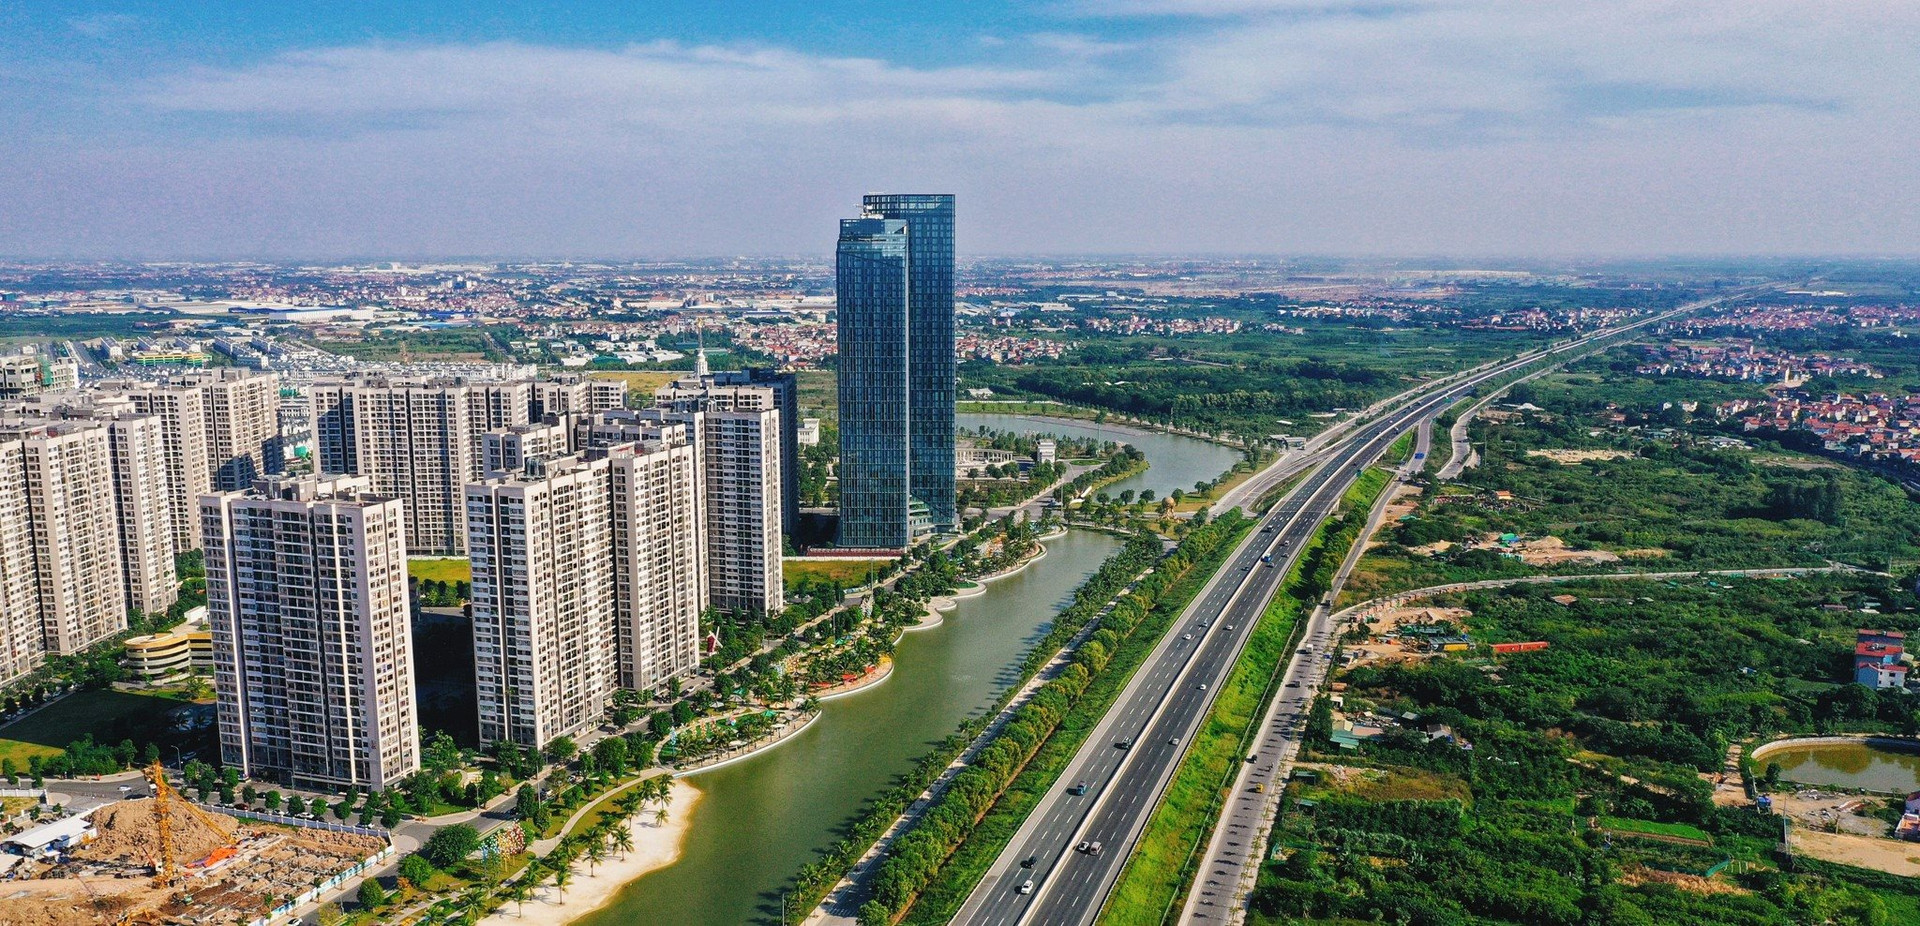 Huyện tại Thủ đô chuẩn bị lên quận: Quy tụ đại dự án to ngang ngửa quận Hoàn Kiếm, chục tỷ một kiot buôn quần áo, 12 xã và thị trấn gộp thành 6 phường - Ảnh 1.